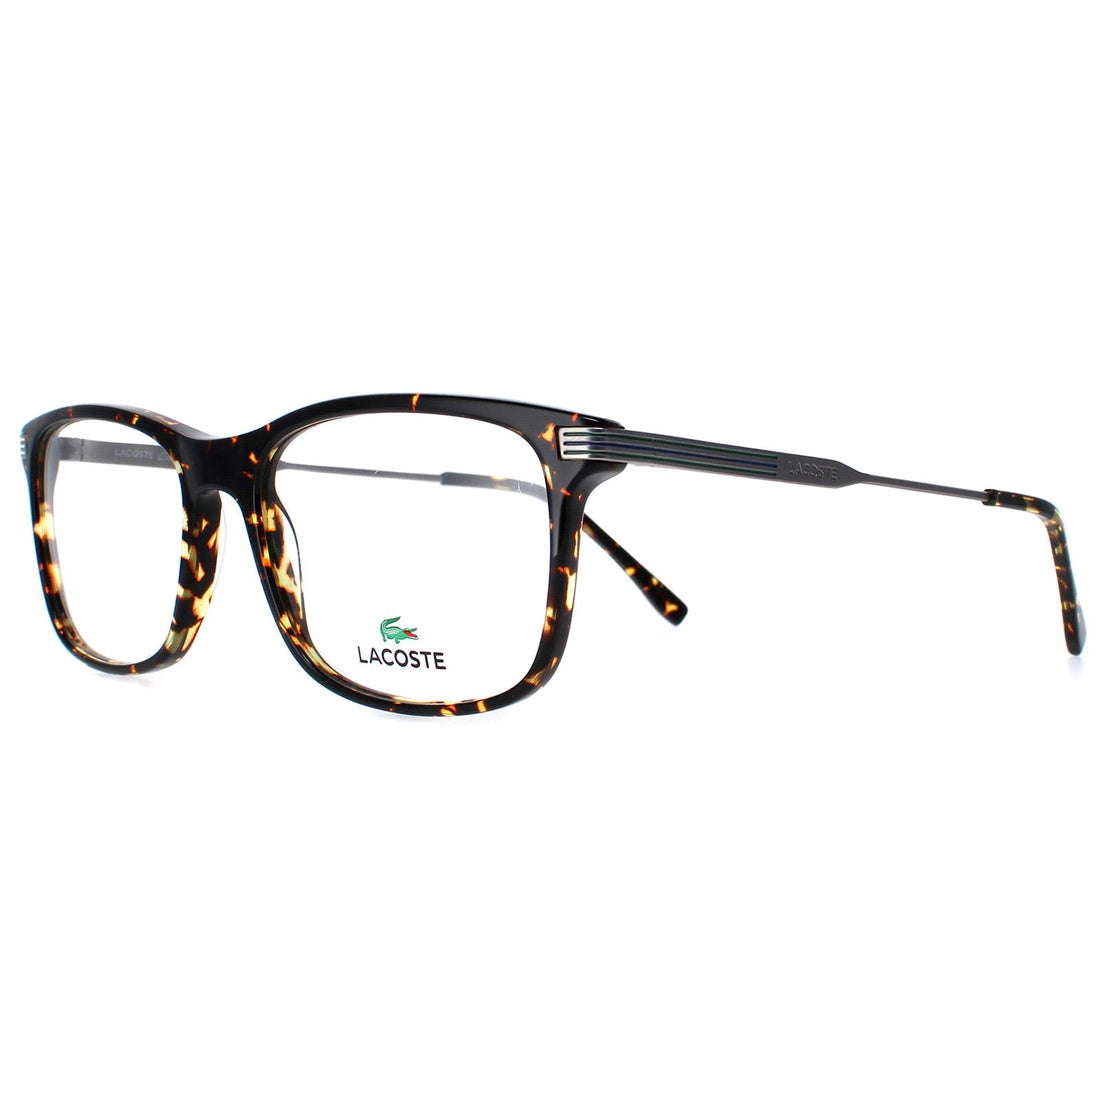 Lacoste Glasses Frames L2888 240 Brown Dark Havana Men